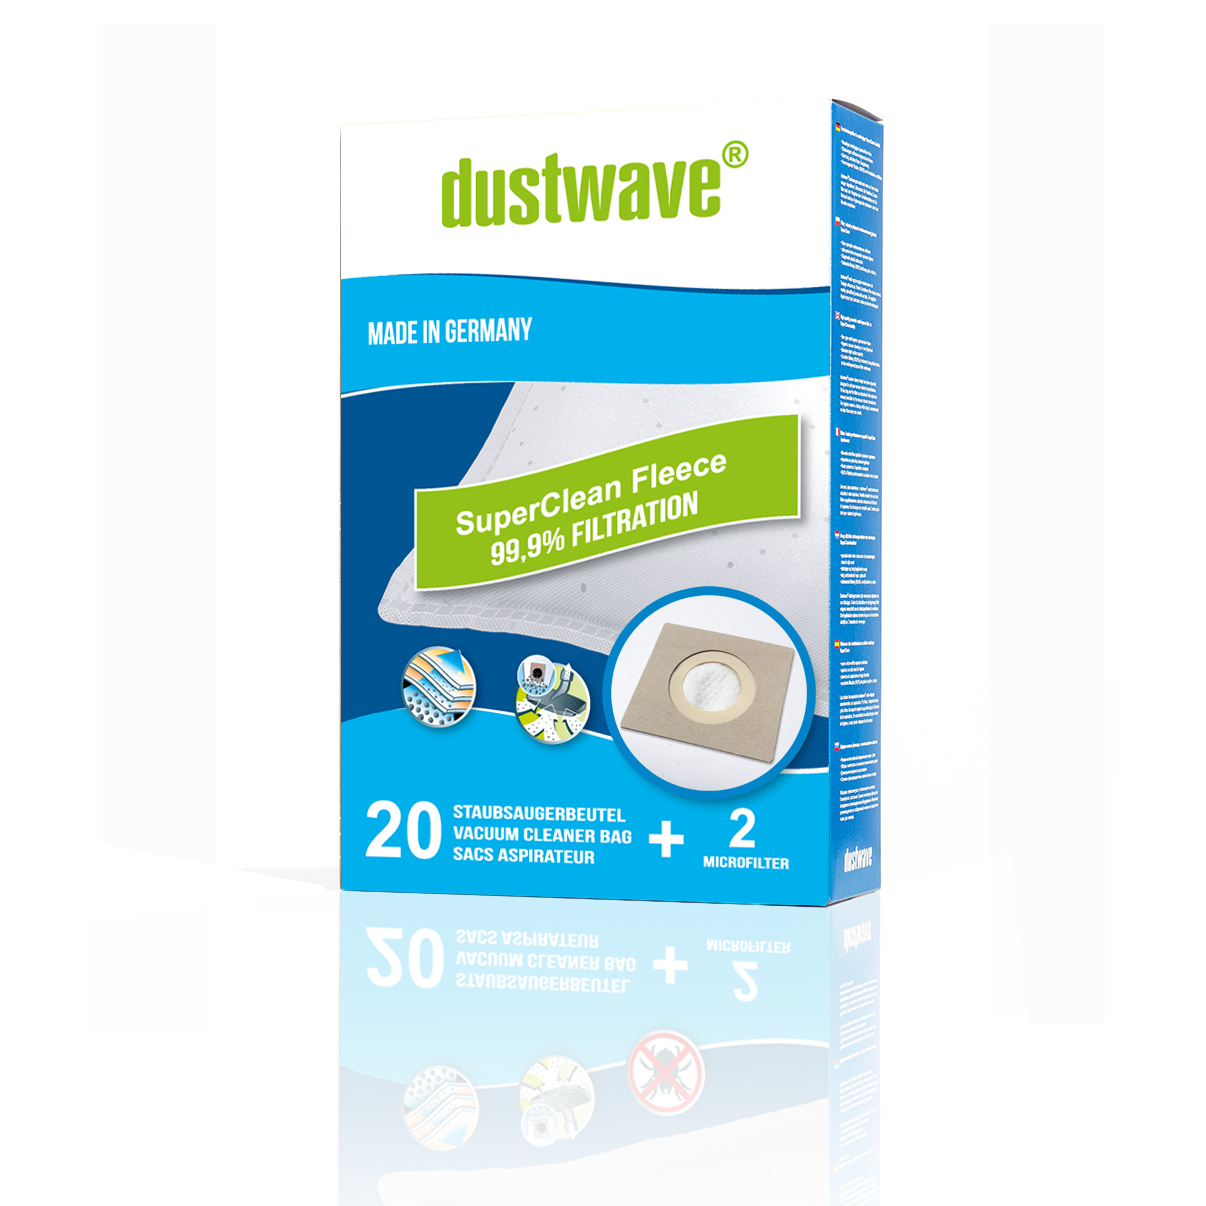 Dustwave® Premium 20 Staubsaugerbeutel für Hoover TX62ALG 011 Telios Extra - hocheffizient, mehrlagiges Mikrovlies mit Hygieneverschluss - Made in Germany